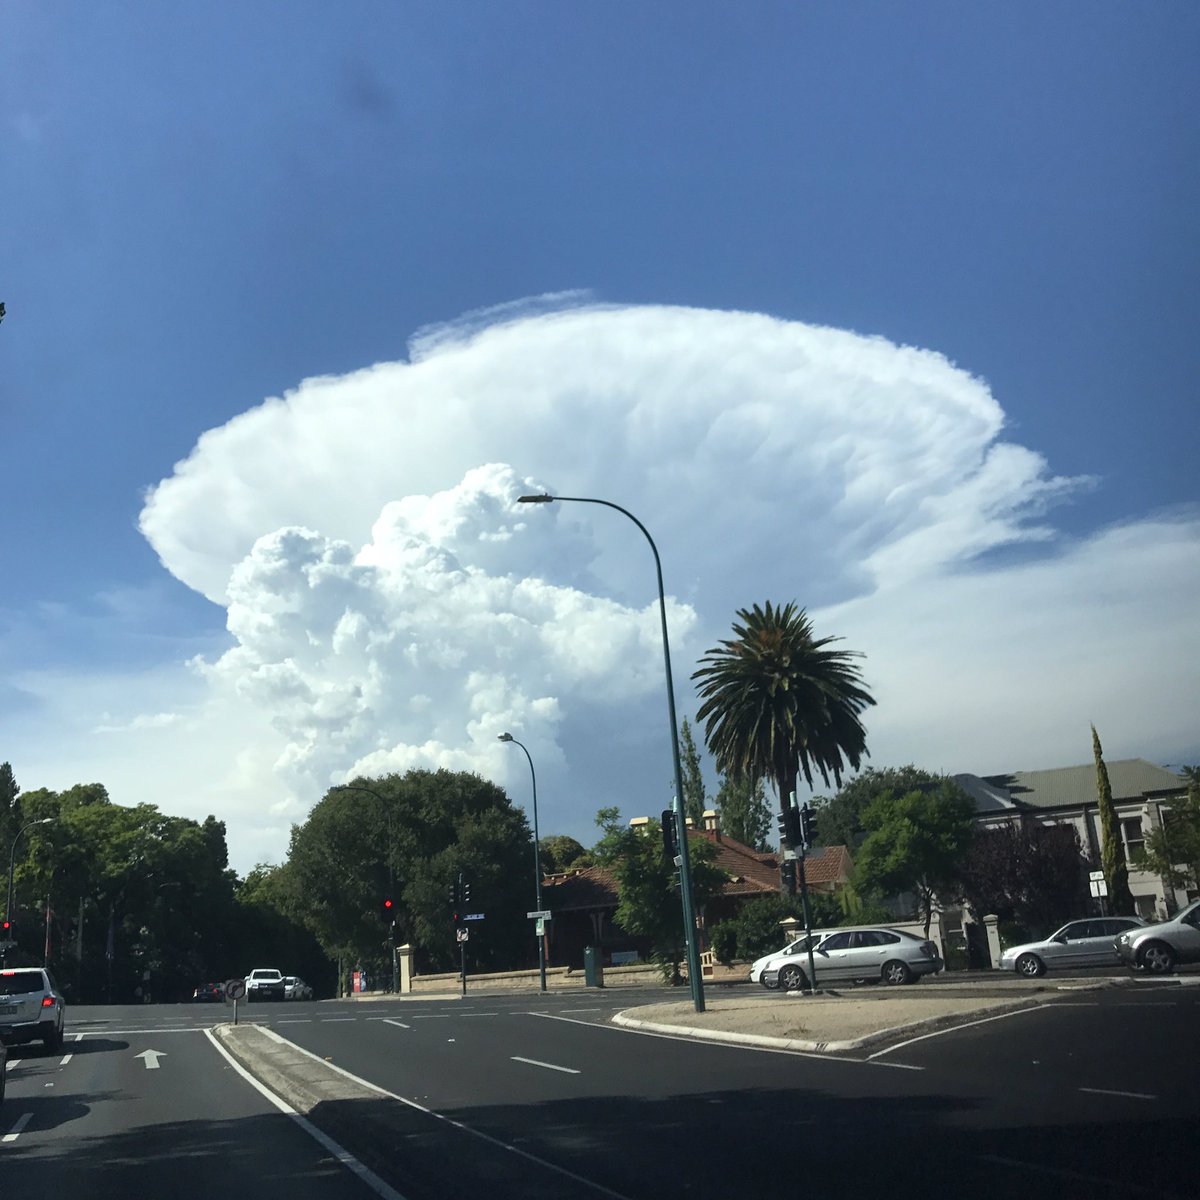 mushroom cloud adelaide australia, mushroom cloud adelaide australia pictures, mushroom cloud adelaide australia video, cumulonimbus cloud march 2017 pictures